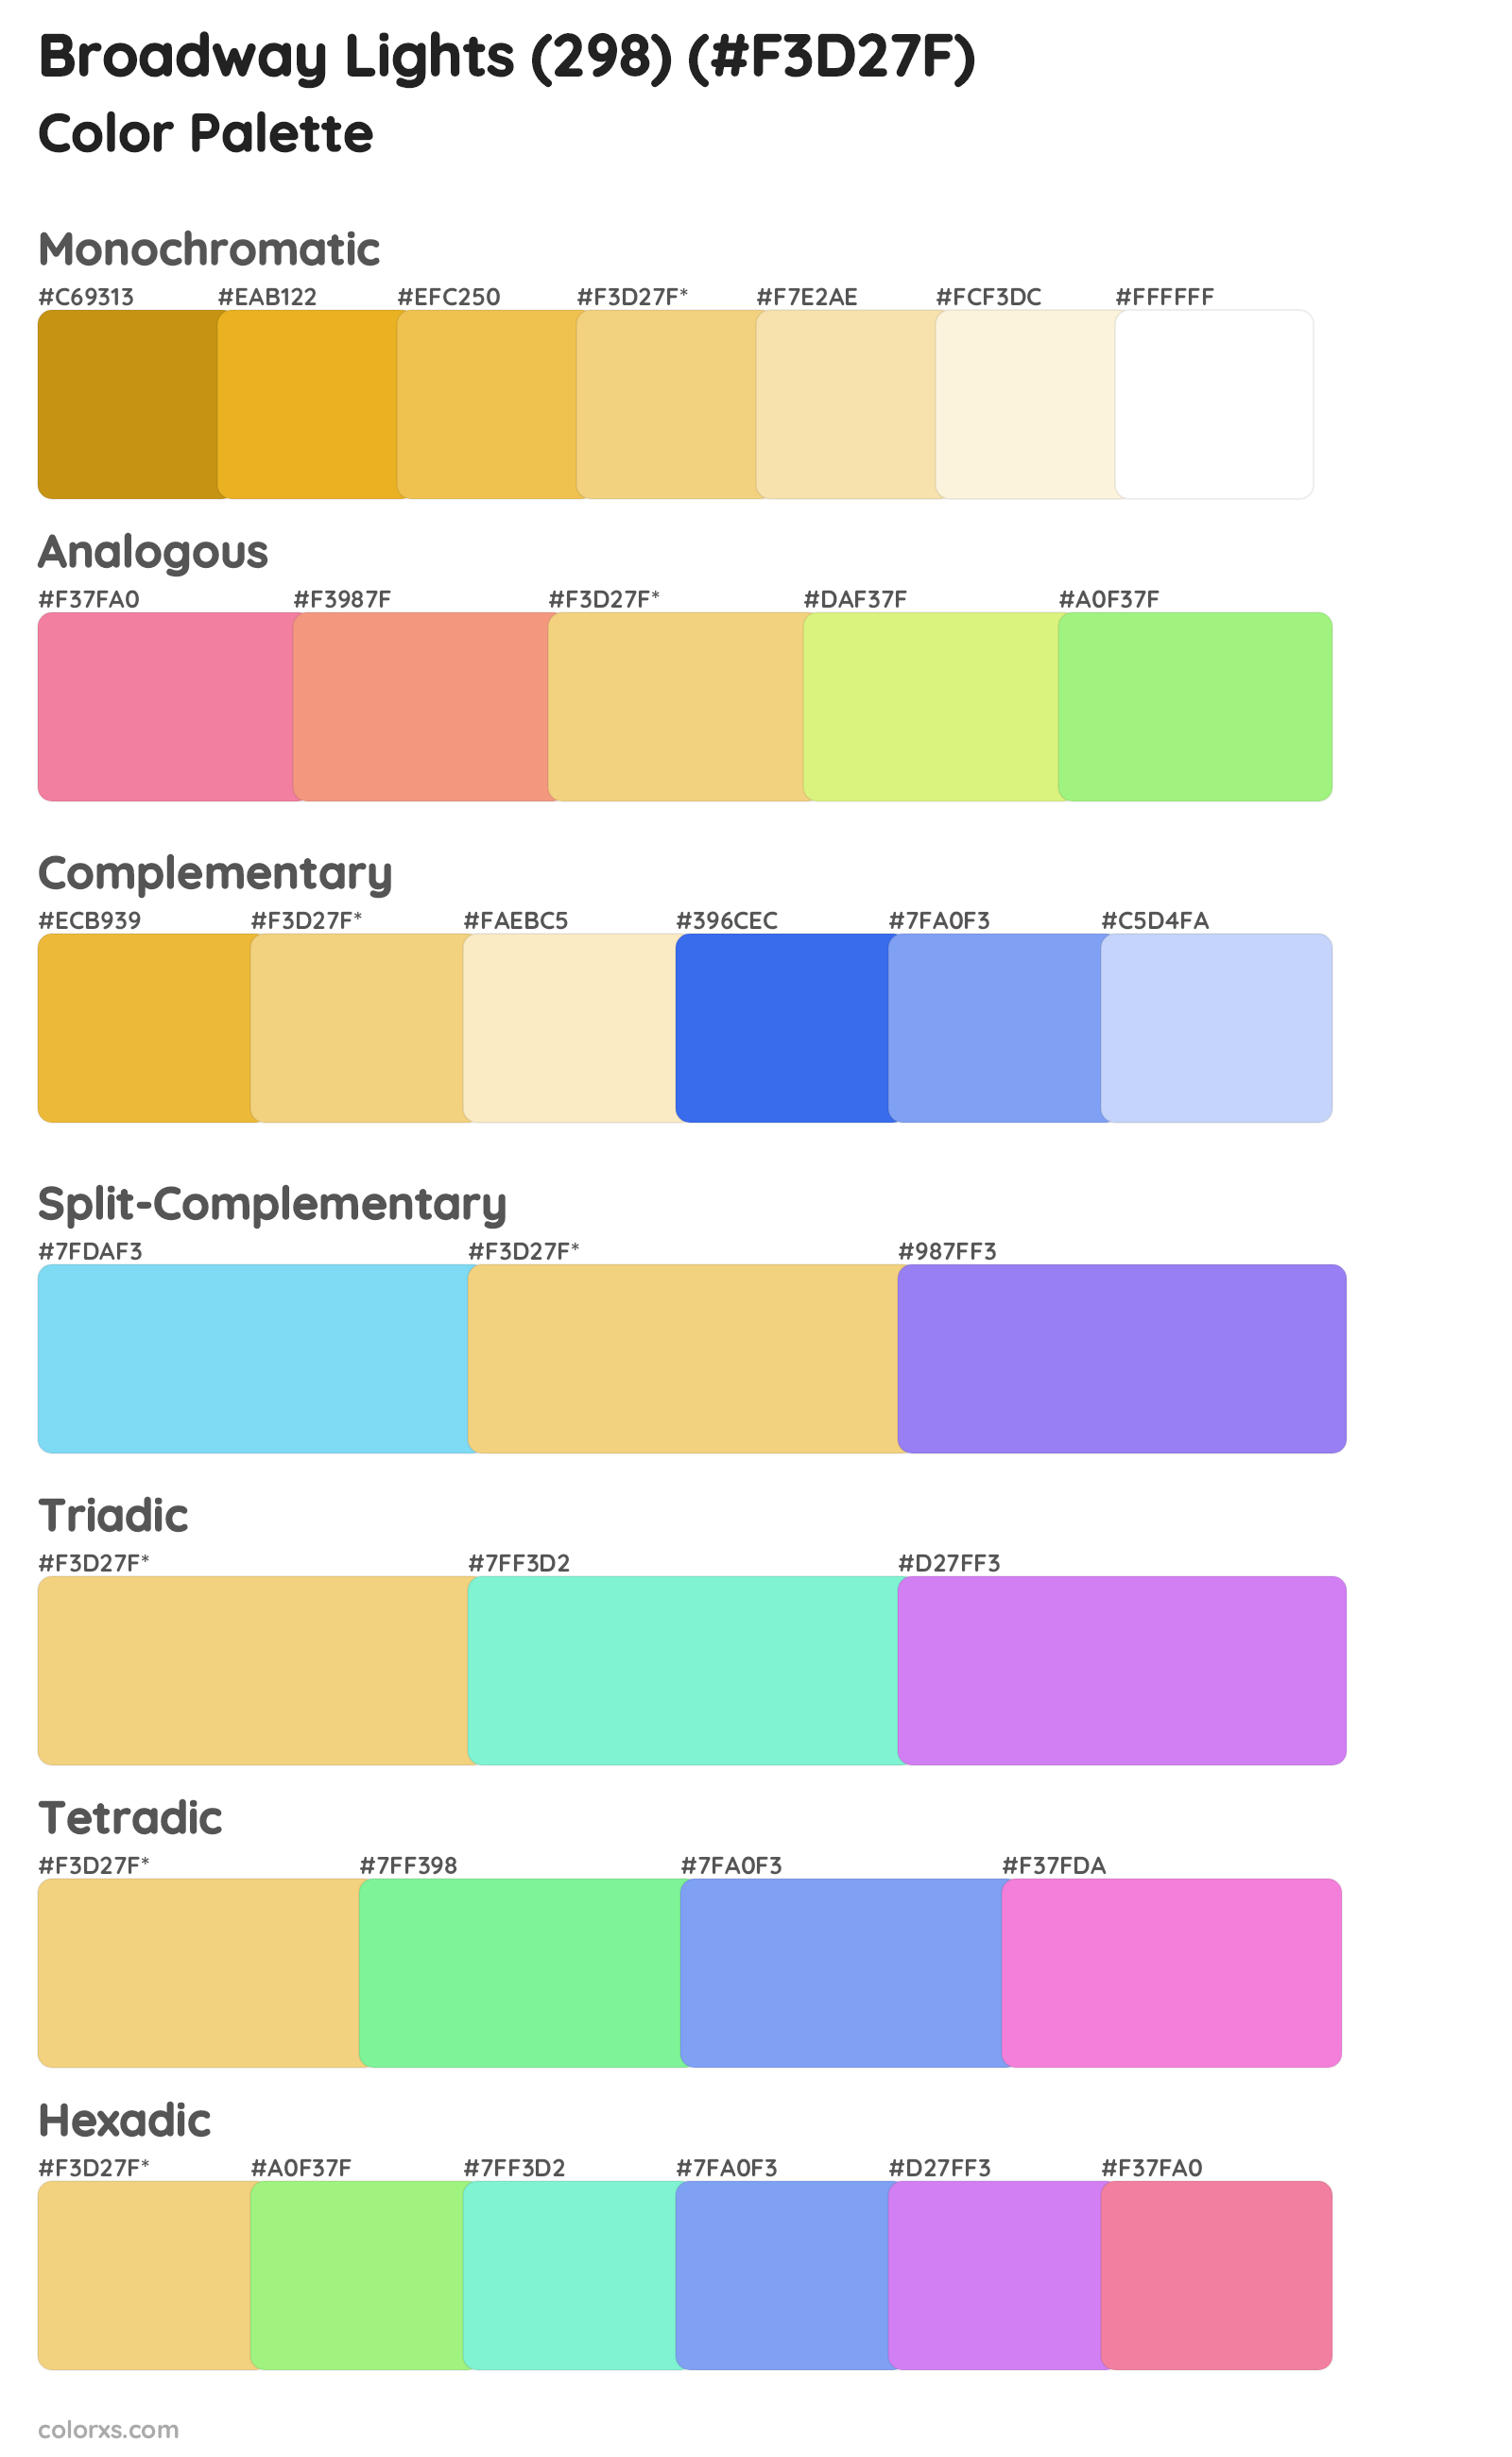 Broadway Lights (298) Color Scheme Palettes